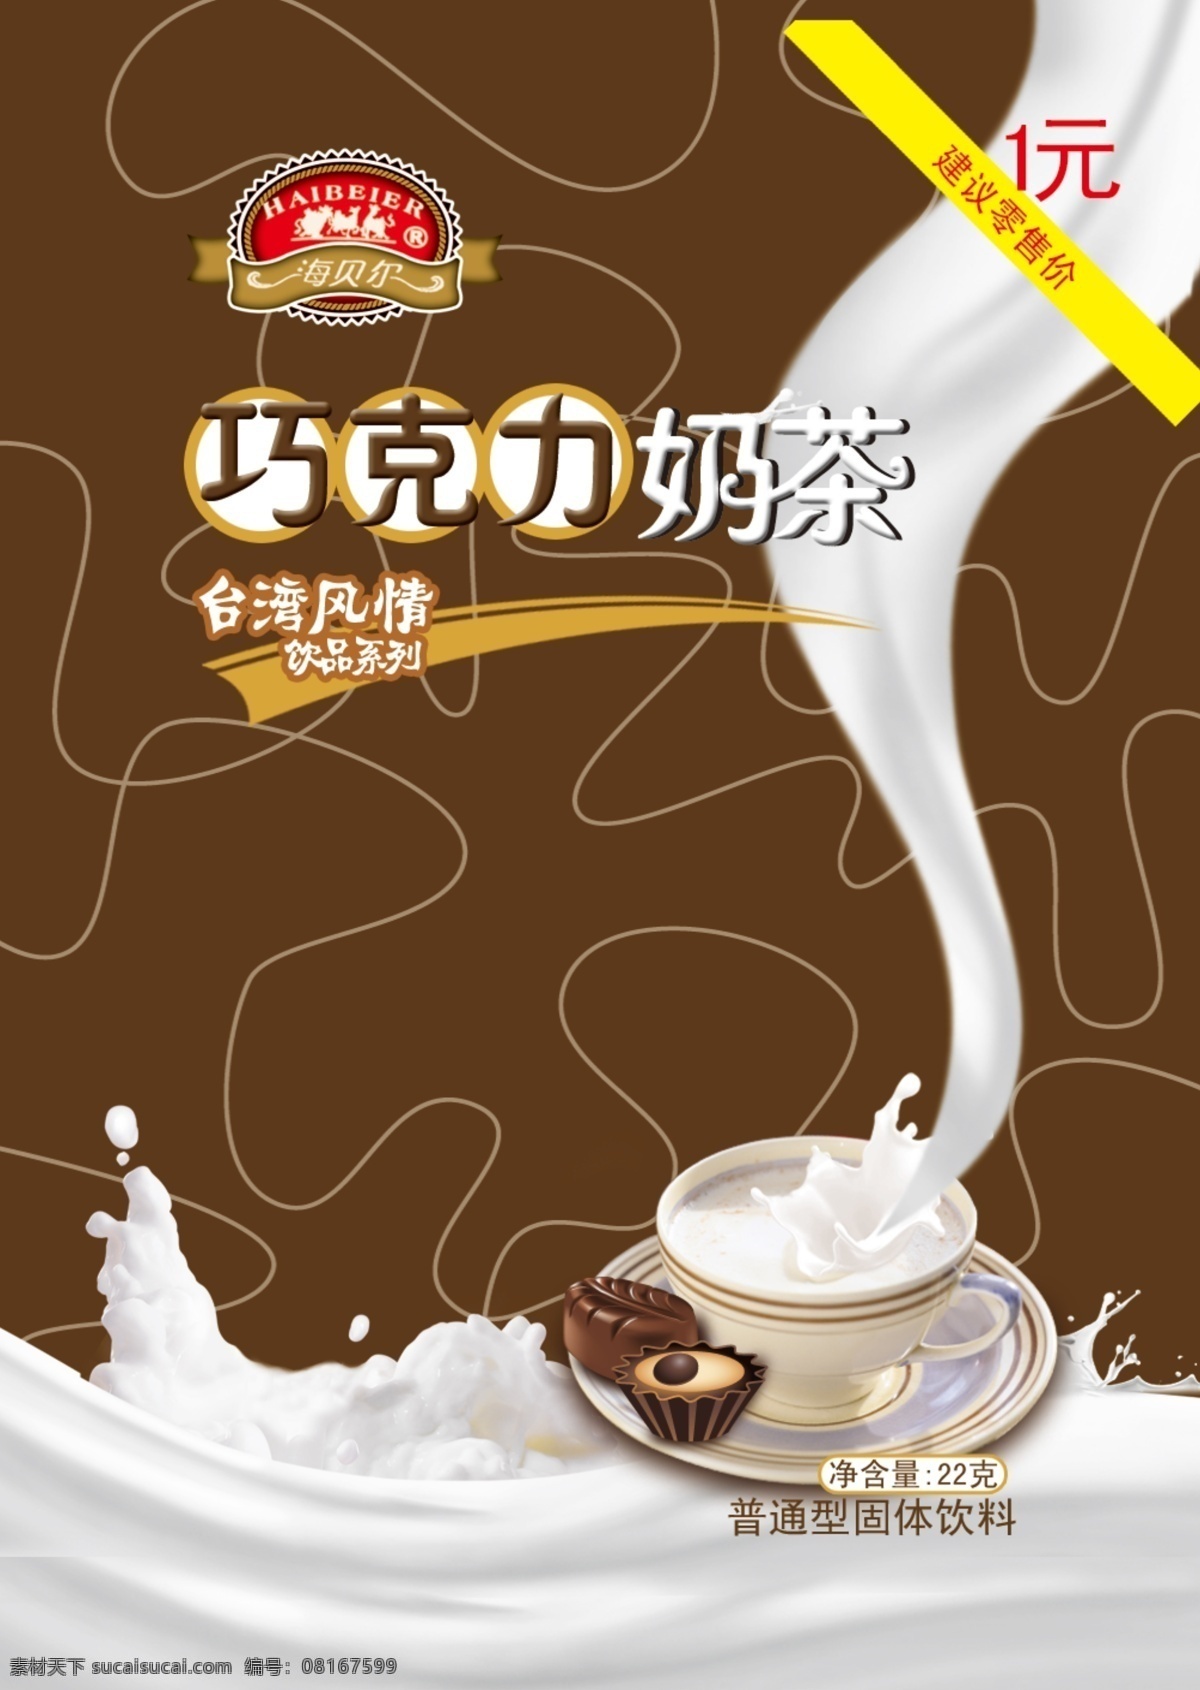 奶茶包装素材 奶茶包装 巧克力 巧克力奶茶 包装 奶花 牛奶 1元 零售价 净含量 台湾风情 咖啡色 深咖色 线条 食品 图标 包装设计 广告设计模板 源文件 psd素材 白色